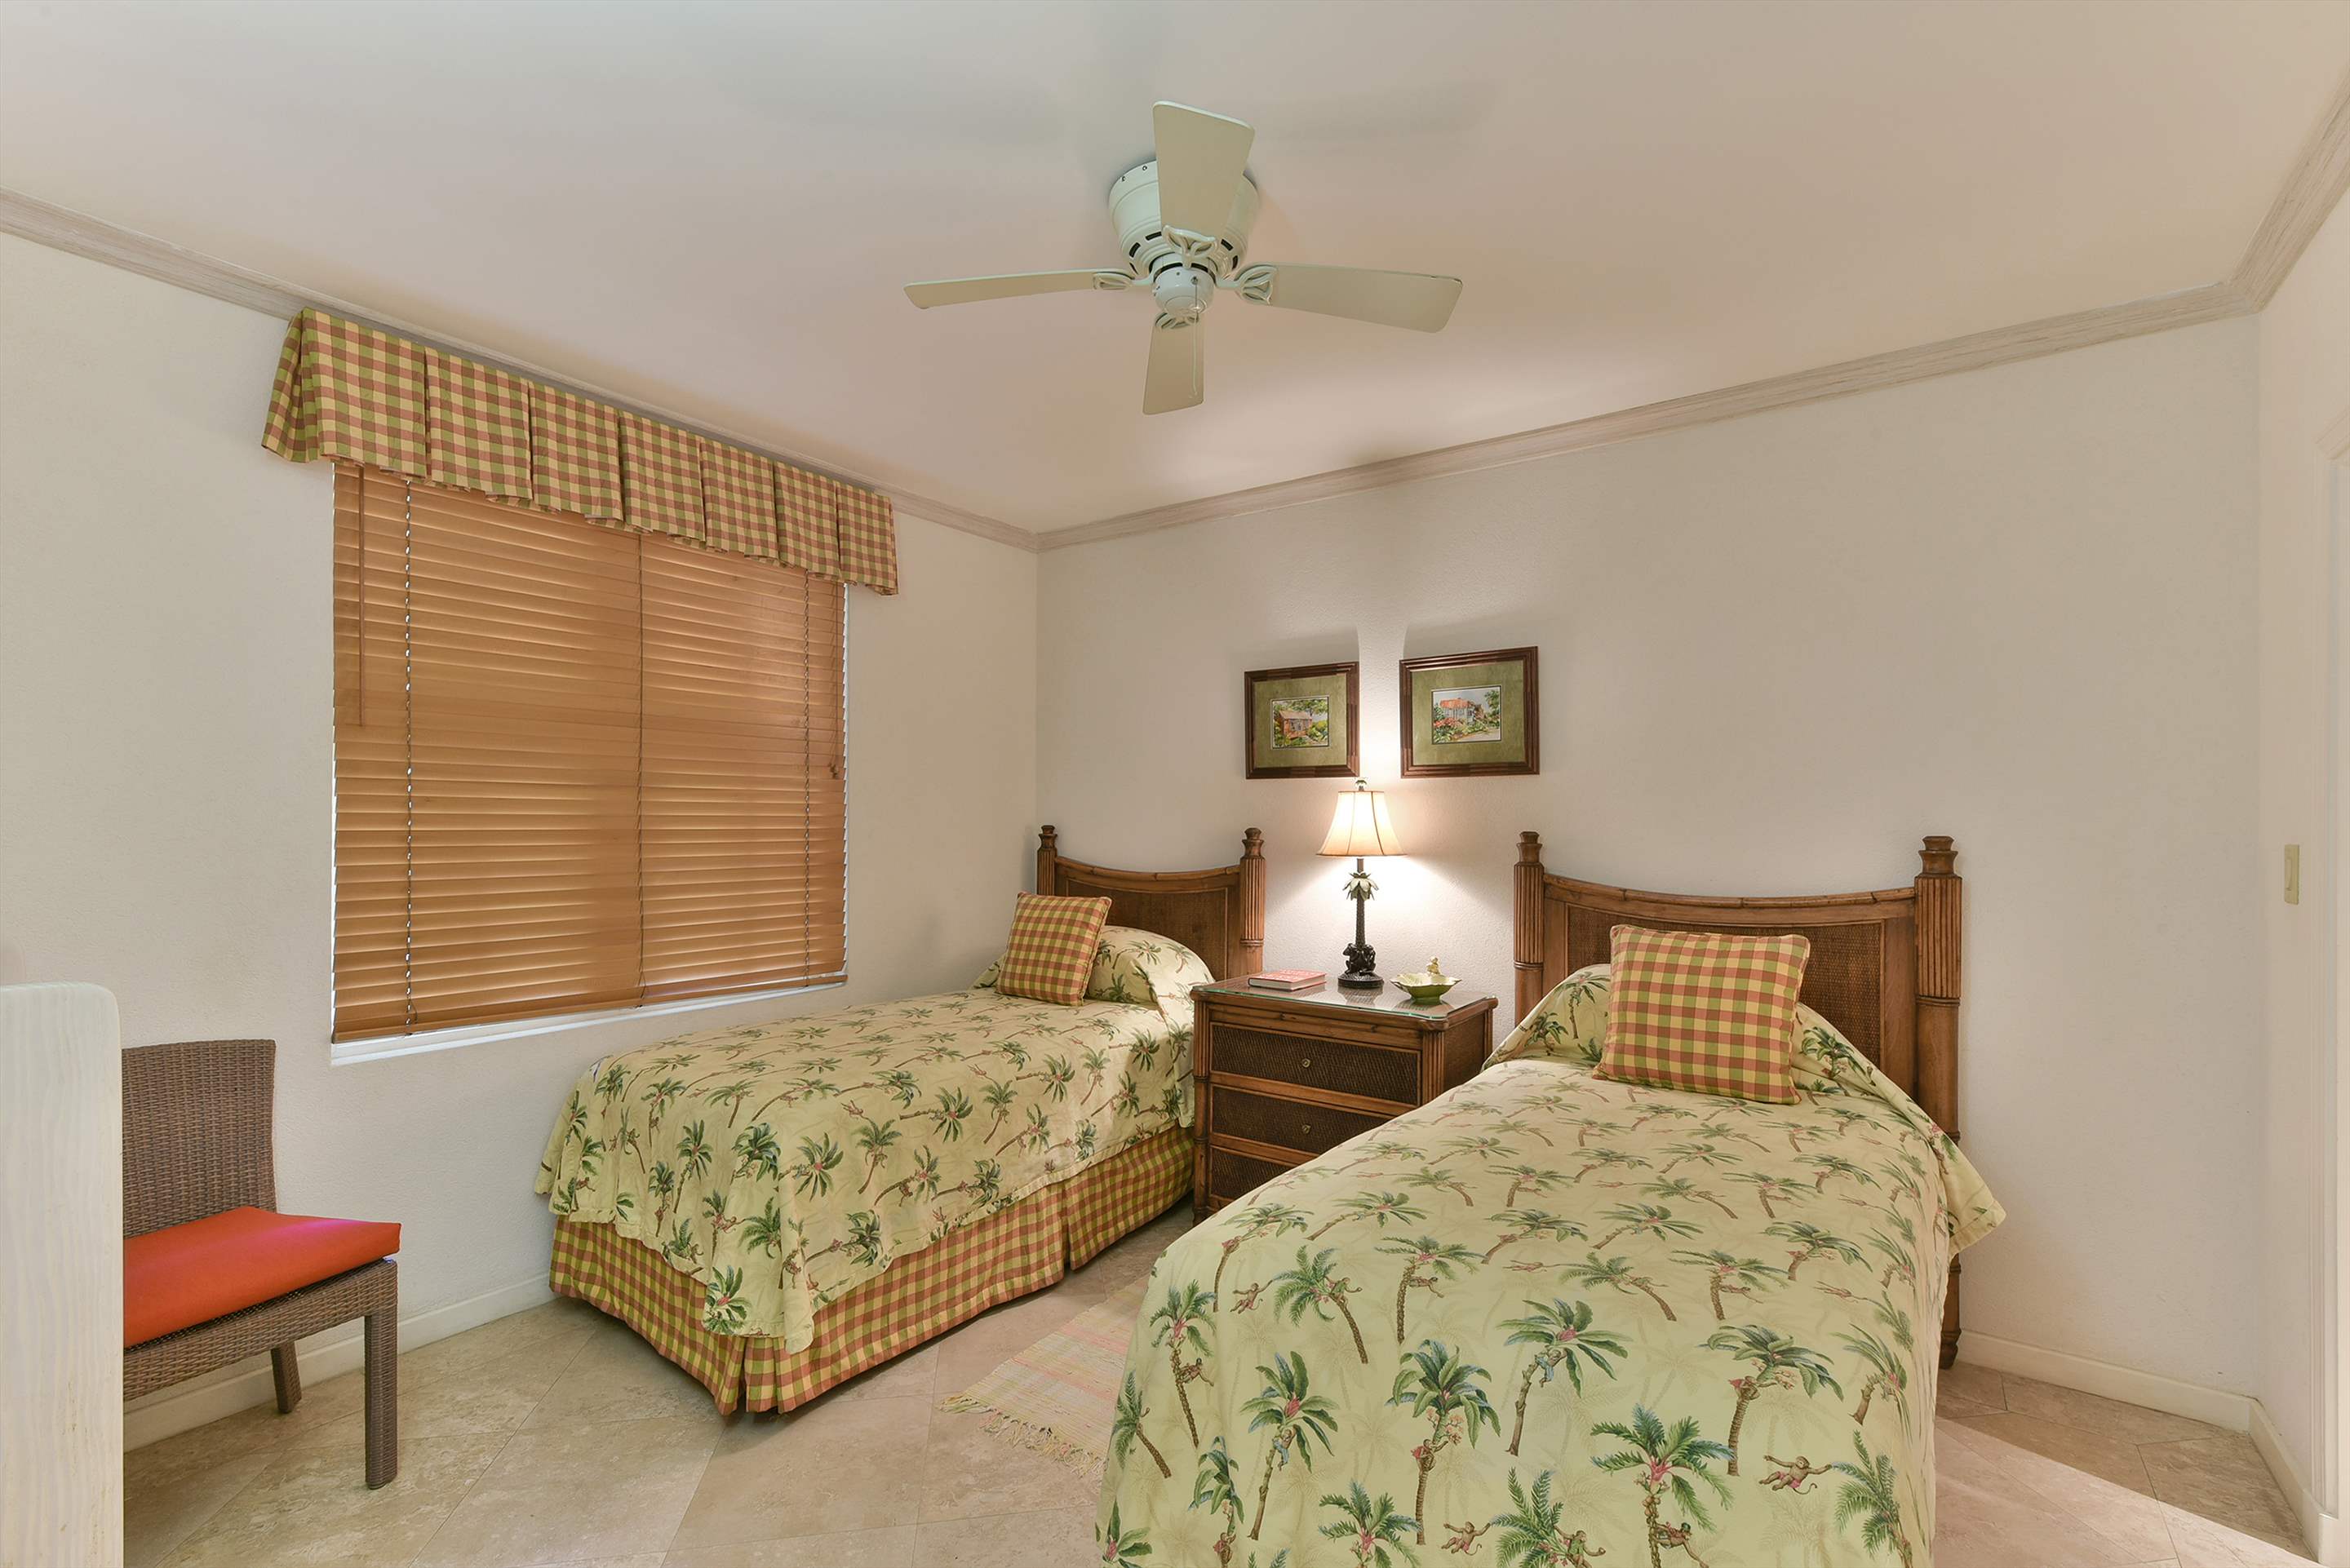 Maxwell Beach Villas 302, 2 bedroom, 2 bedroom apartment in St. Lawrence Gap & South Coast, Barbados Photo #16